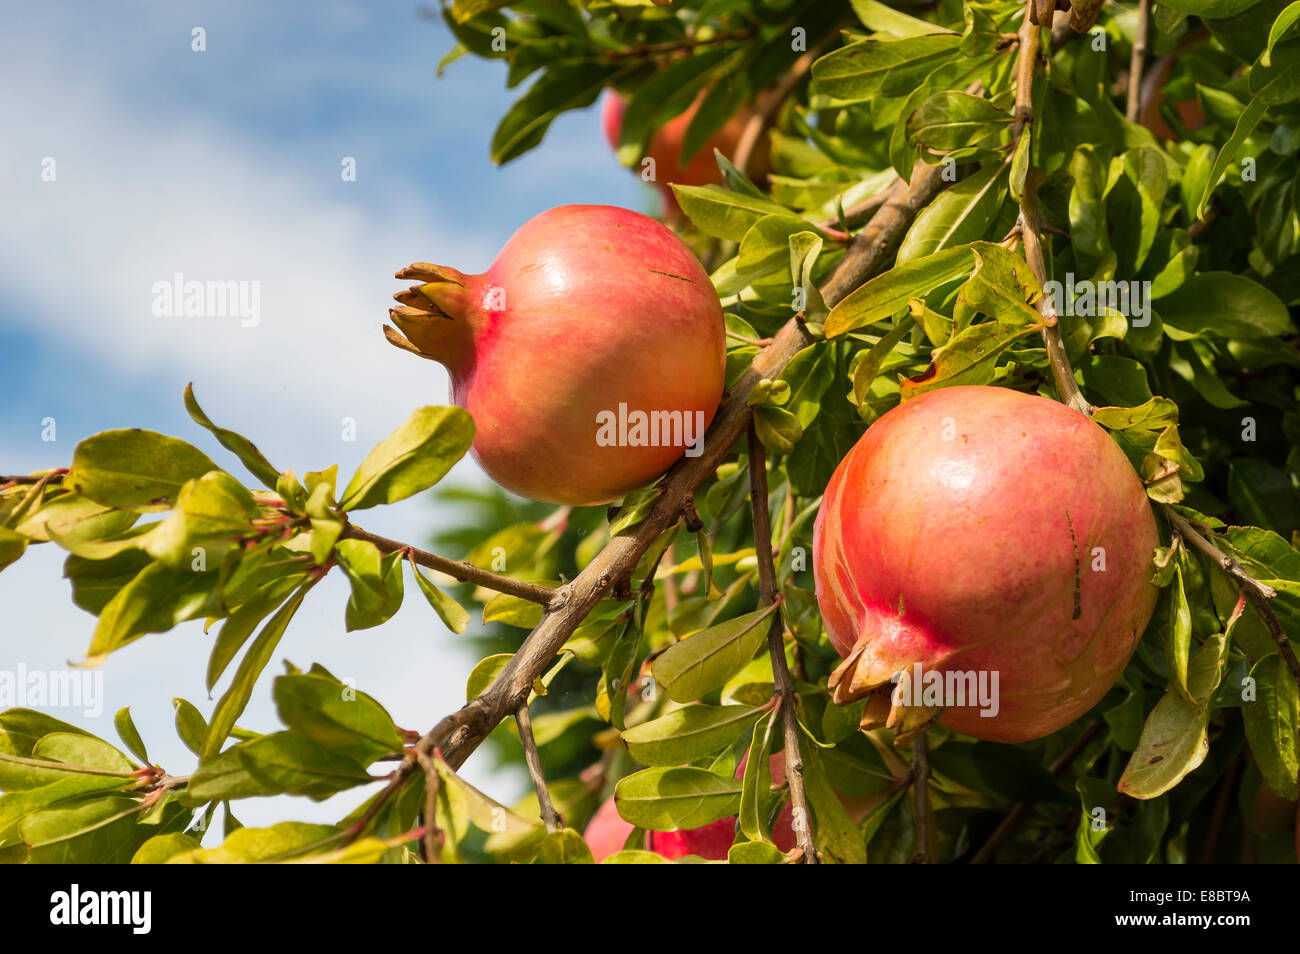 Frutti di autunno: due melagrane su albero Foto Stock